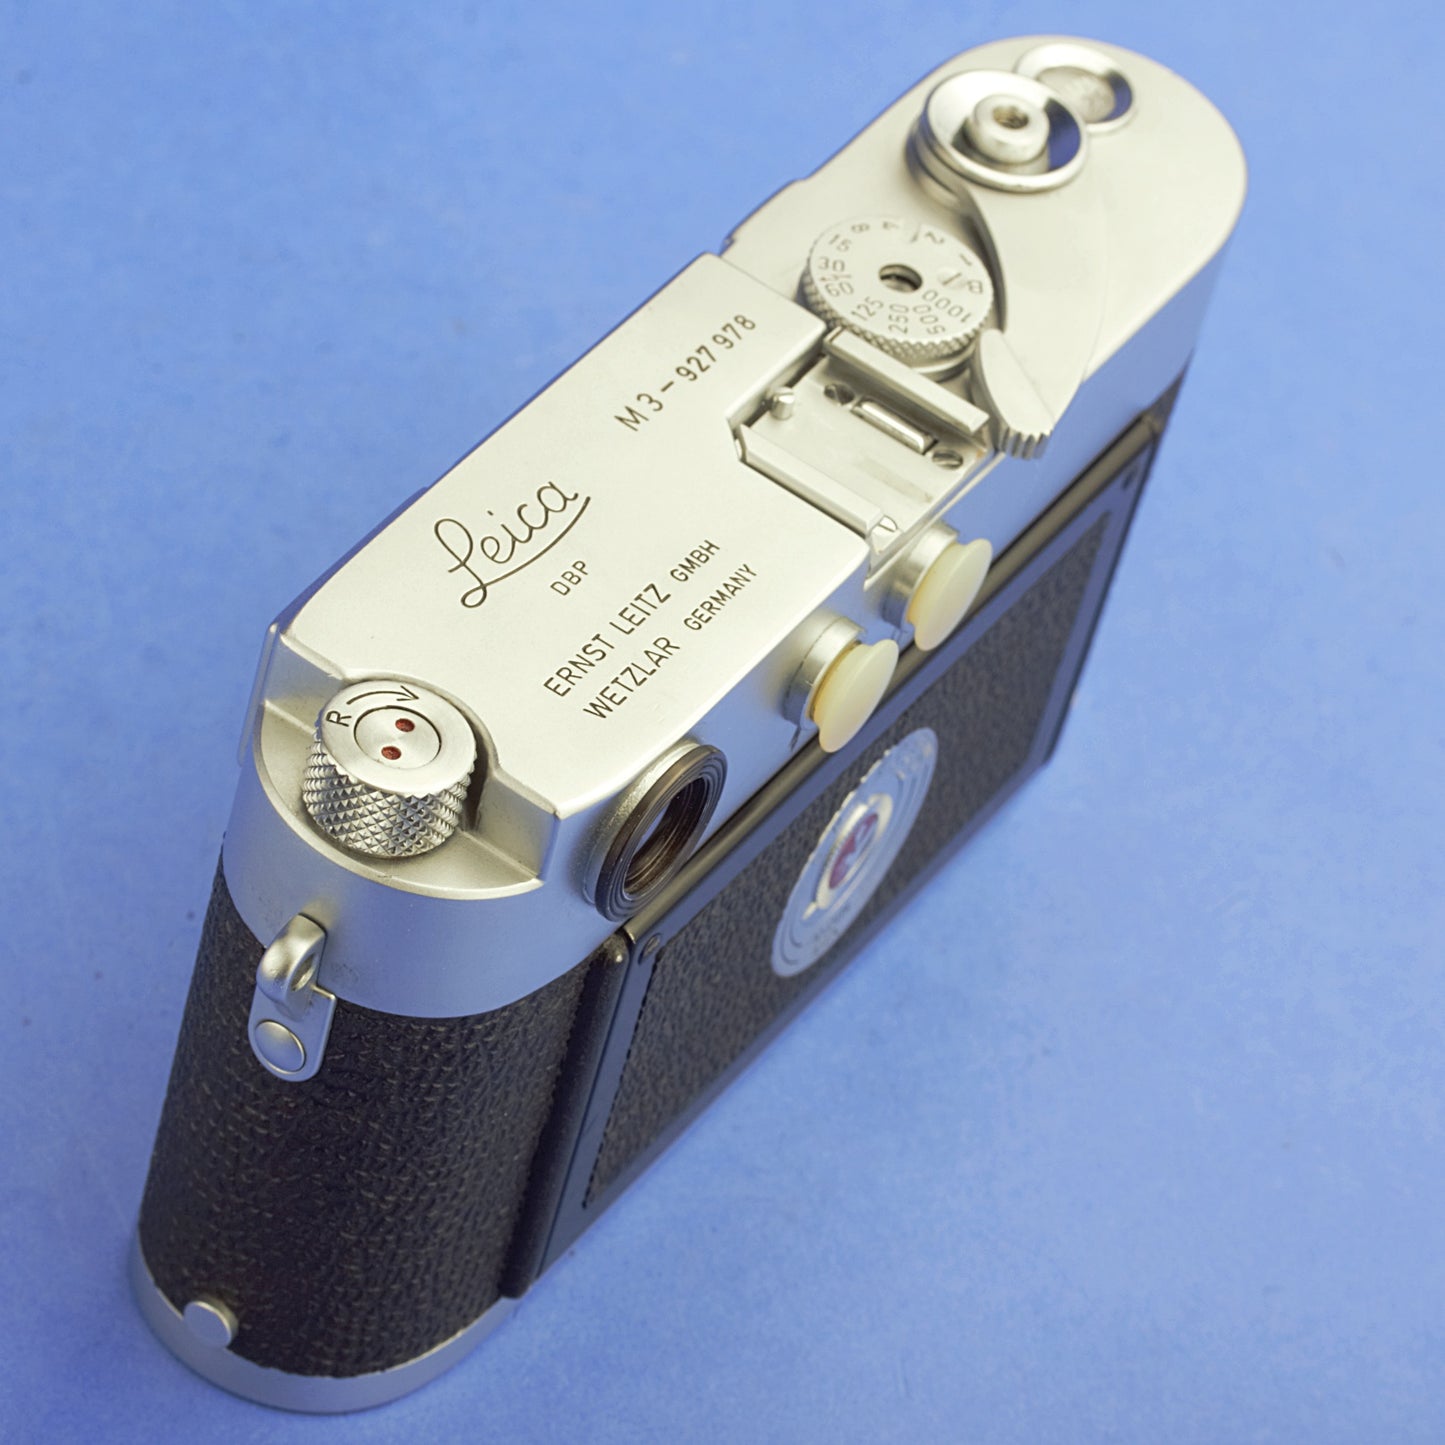 Leica M3 Single Stroke Film Camera Body Beautiful Condition